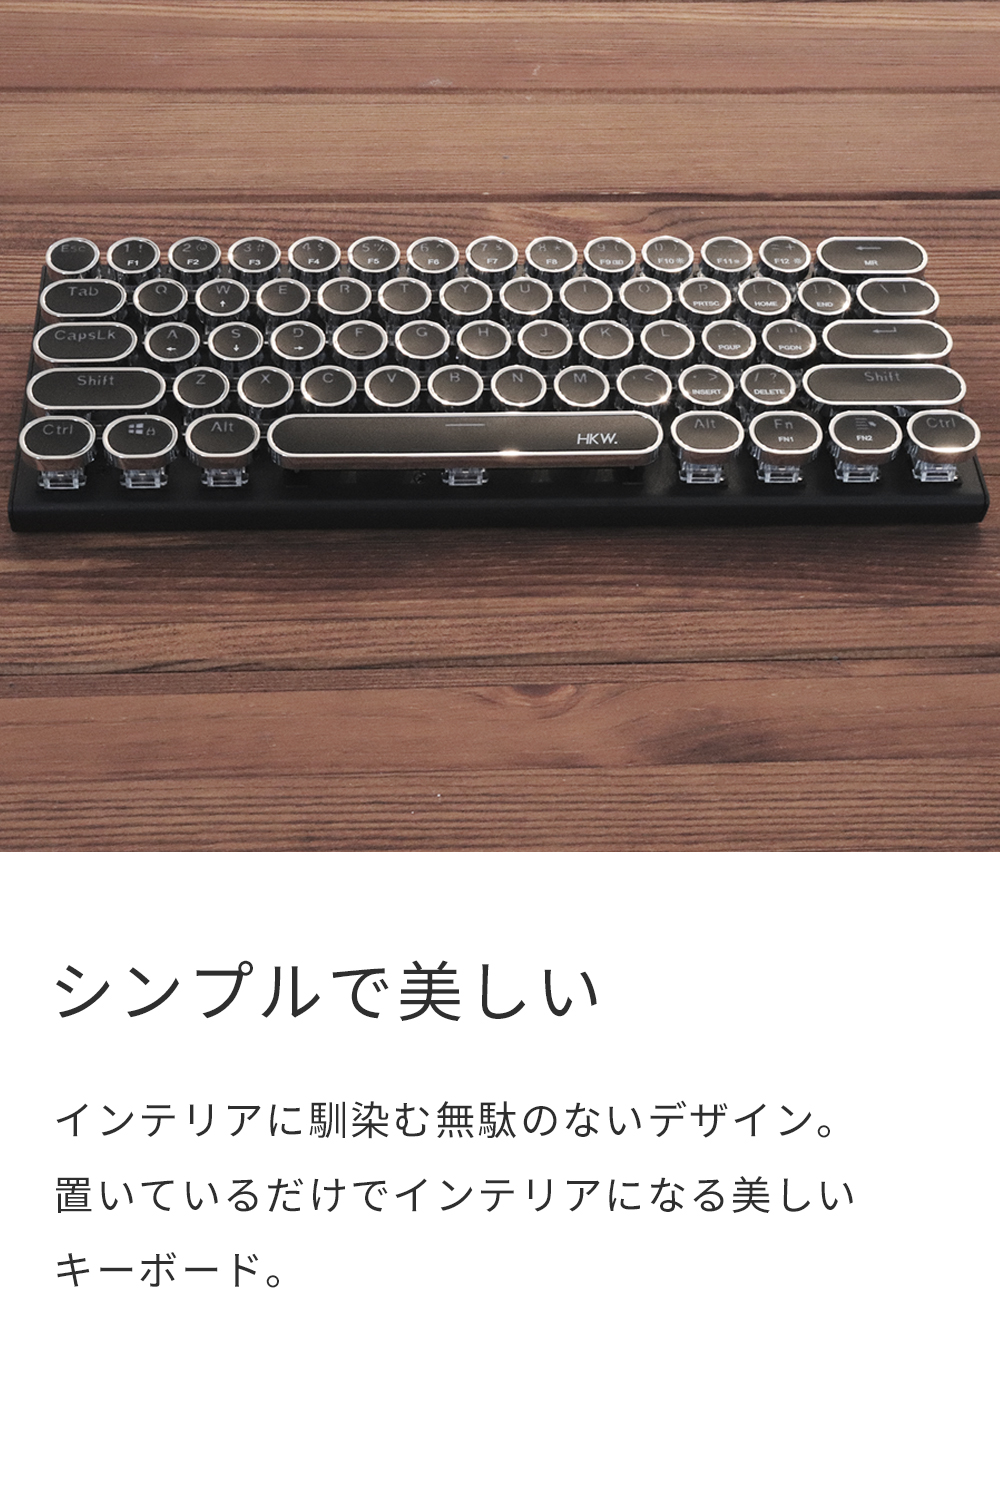 タイプライター風キーボード 有線 HKW メカニカルキーボード ミニ キーボード Keyboard 角度調節 テレワーク Type-C 青軸 61キー  USB有線 送料無料 シルバー